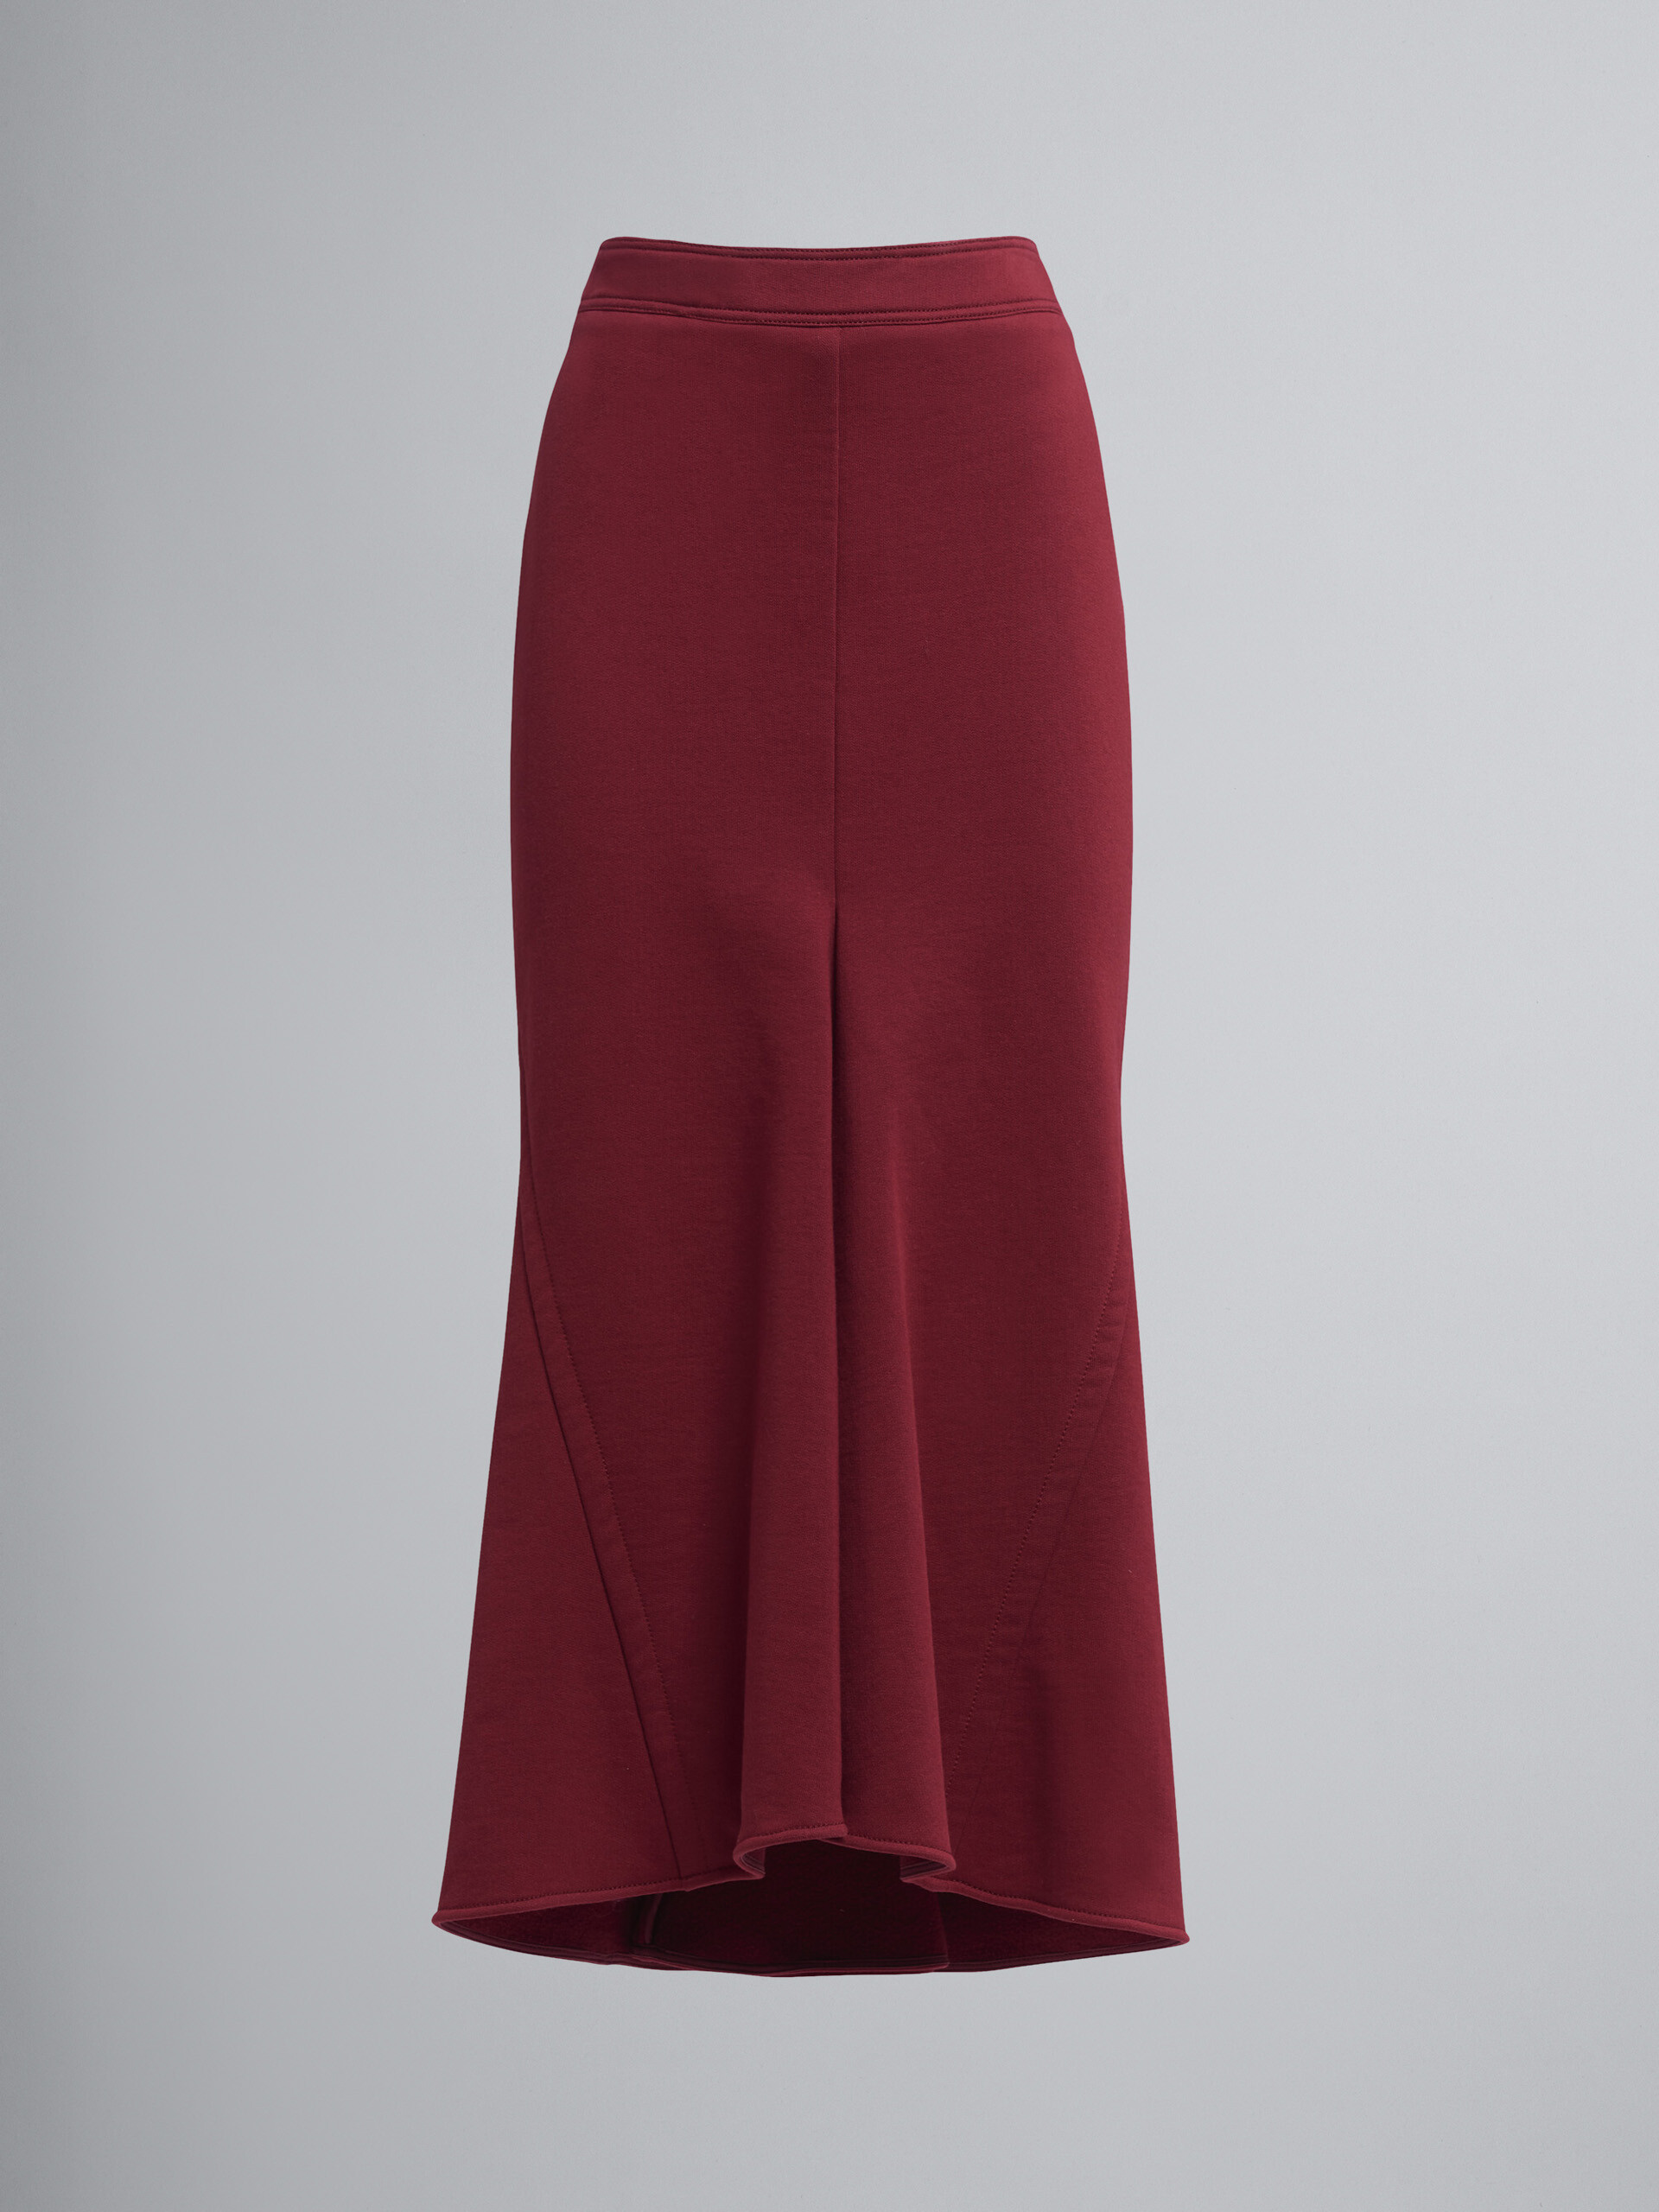 Falda midi en sudadera de algodón - Faldas - Image 1